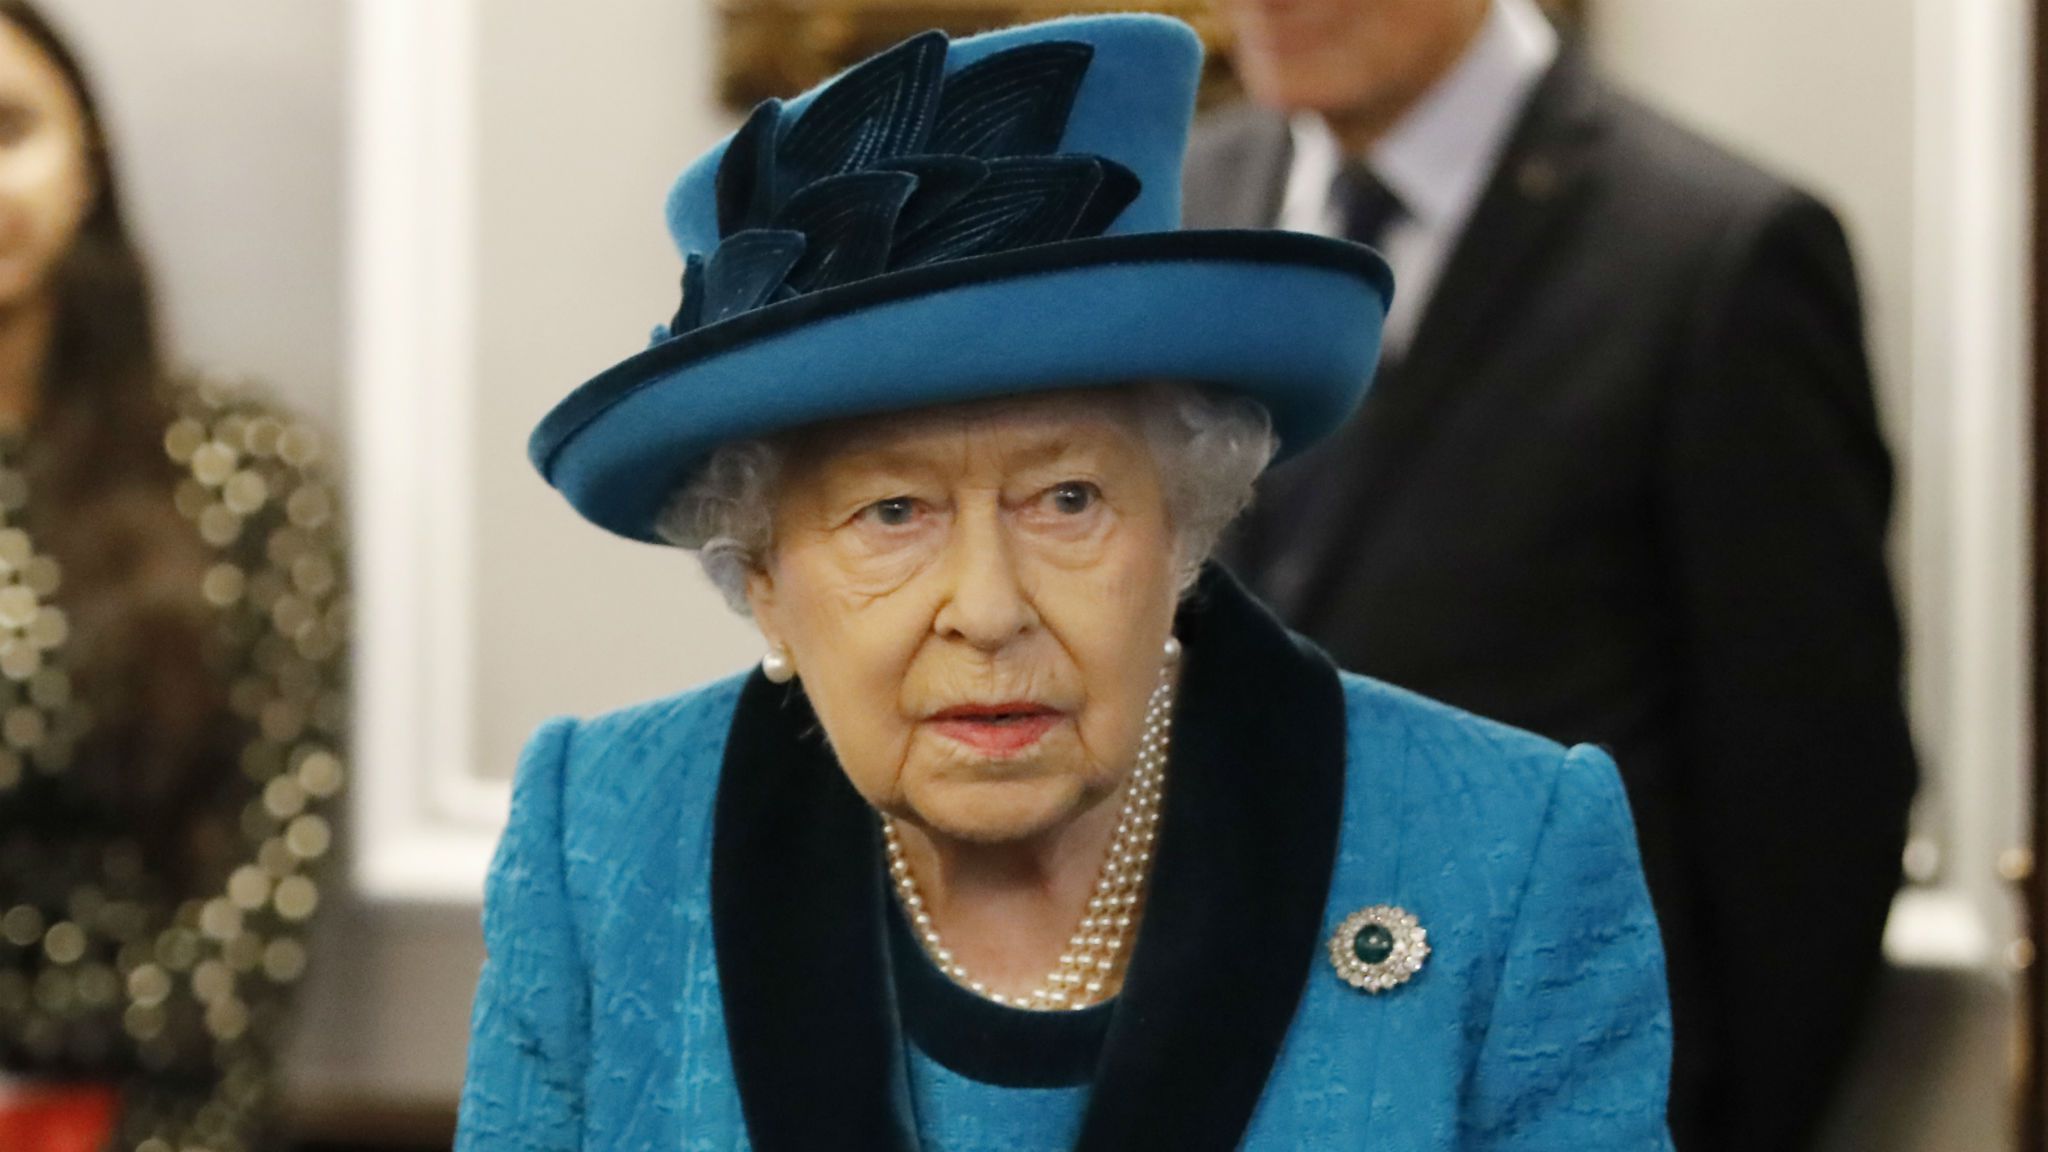 La reine Elizabeth II annoncée morte : D'où vient cette fausse rumeur ?